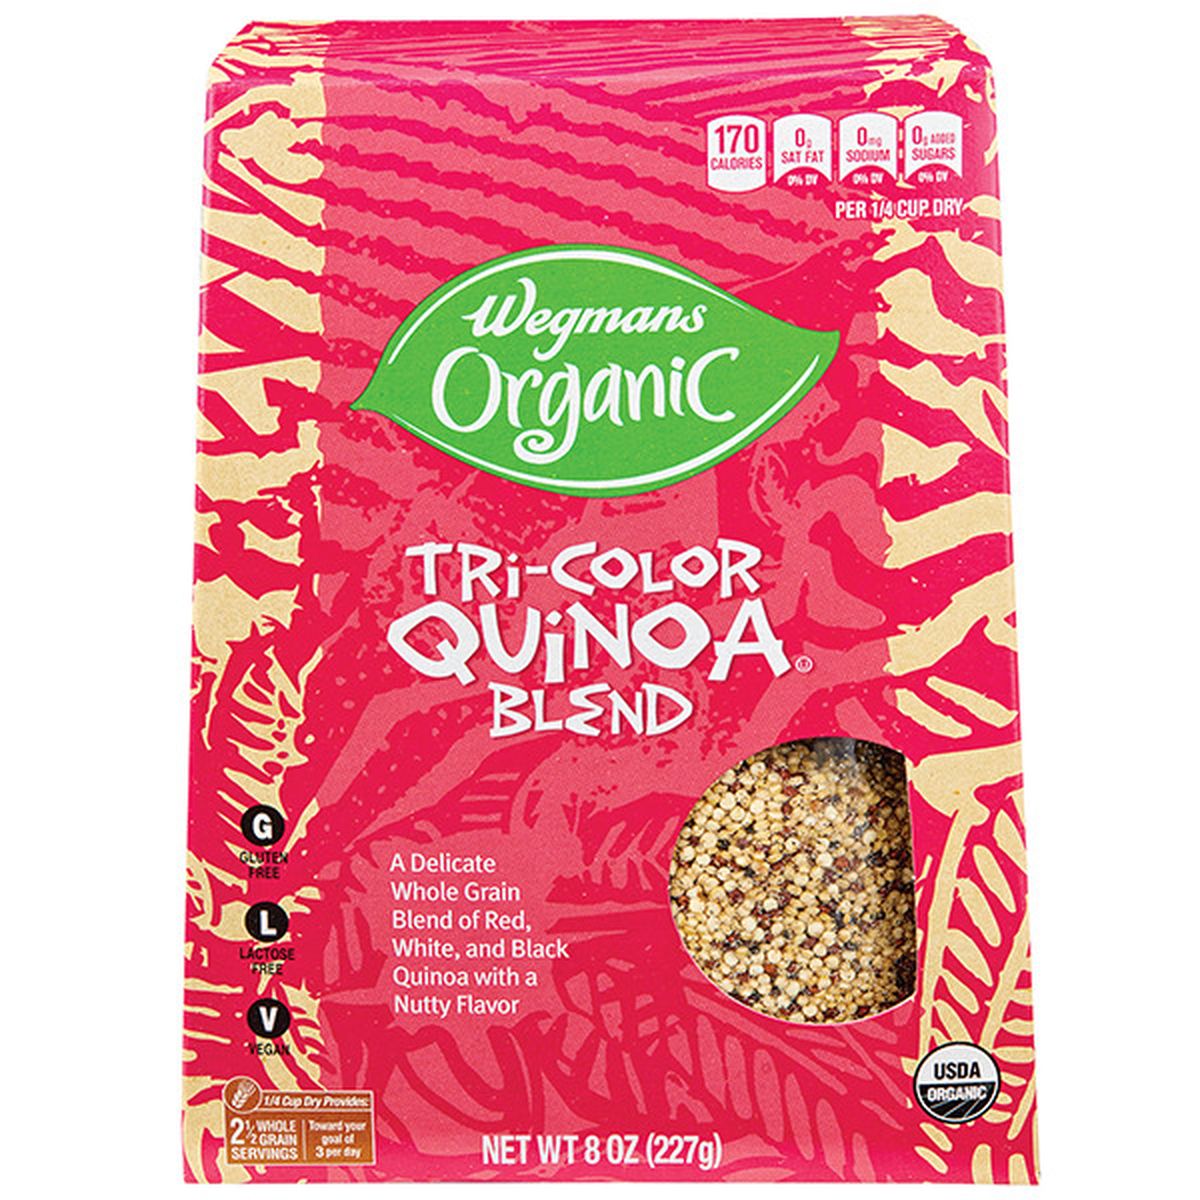 Calories in Wegmans Organic Tri-Color Quinoa